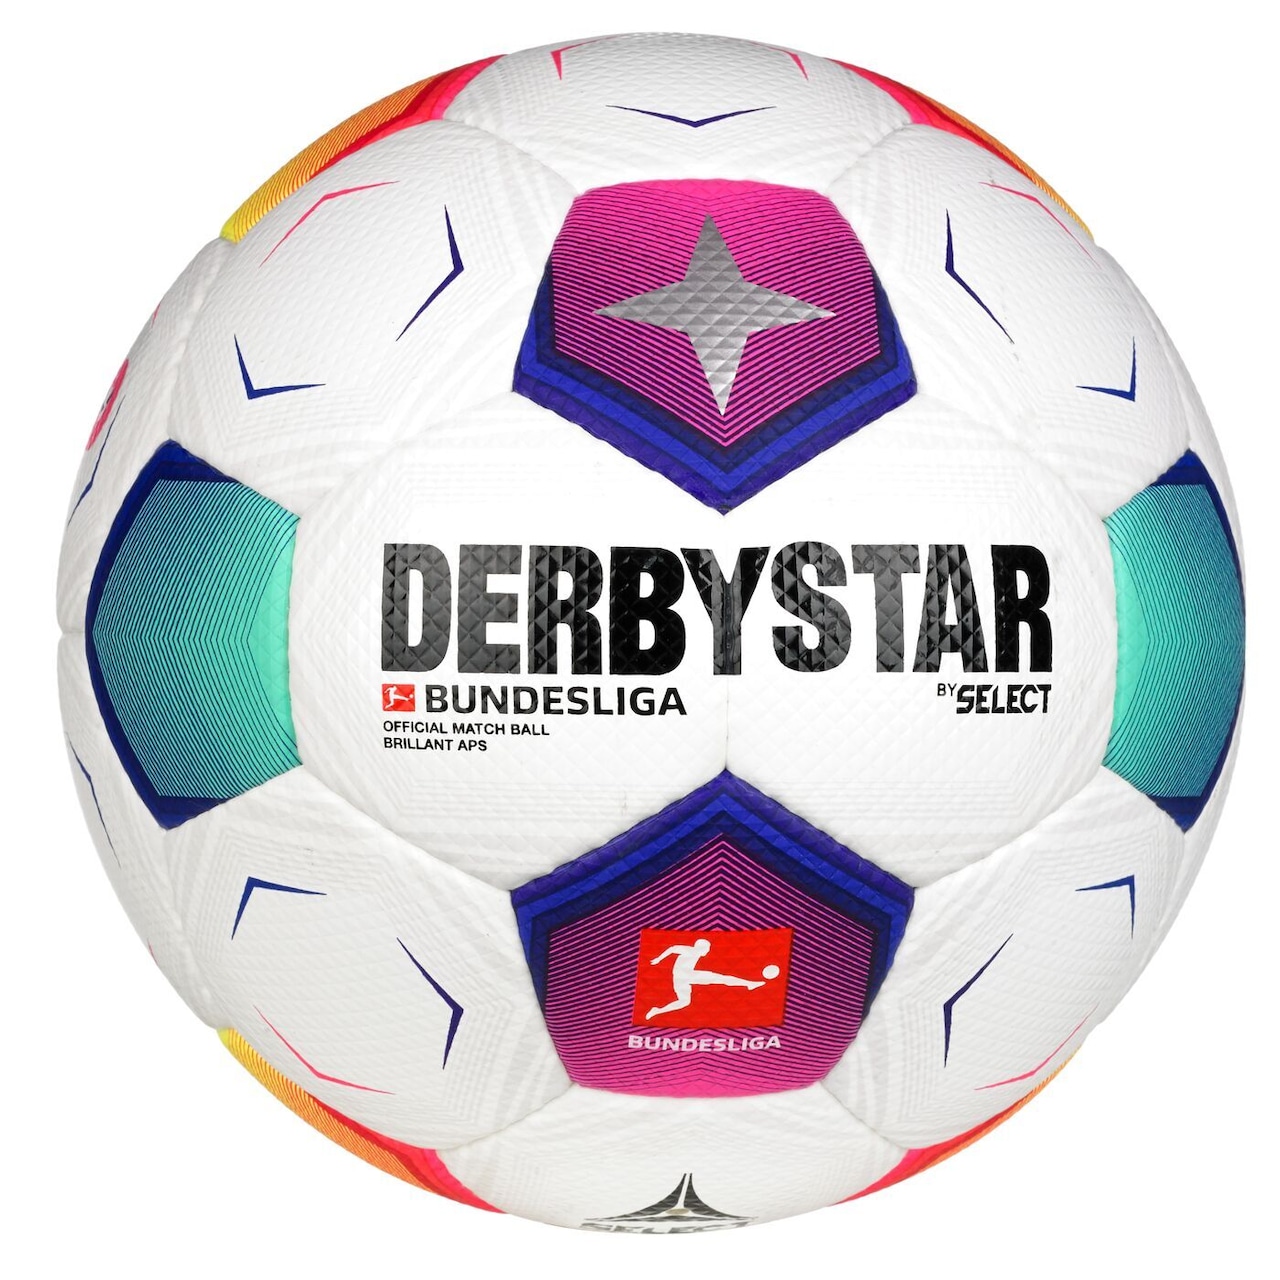 ダービースター DERBYSTAR サッカーボール Bundesliga Brillant APS V23 5号球